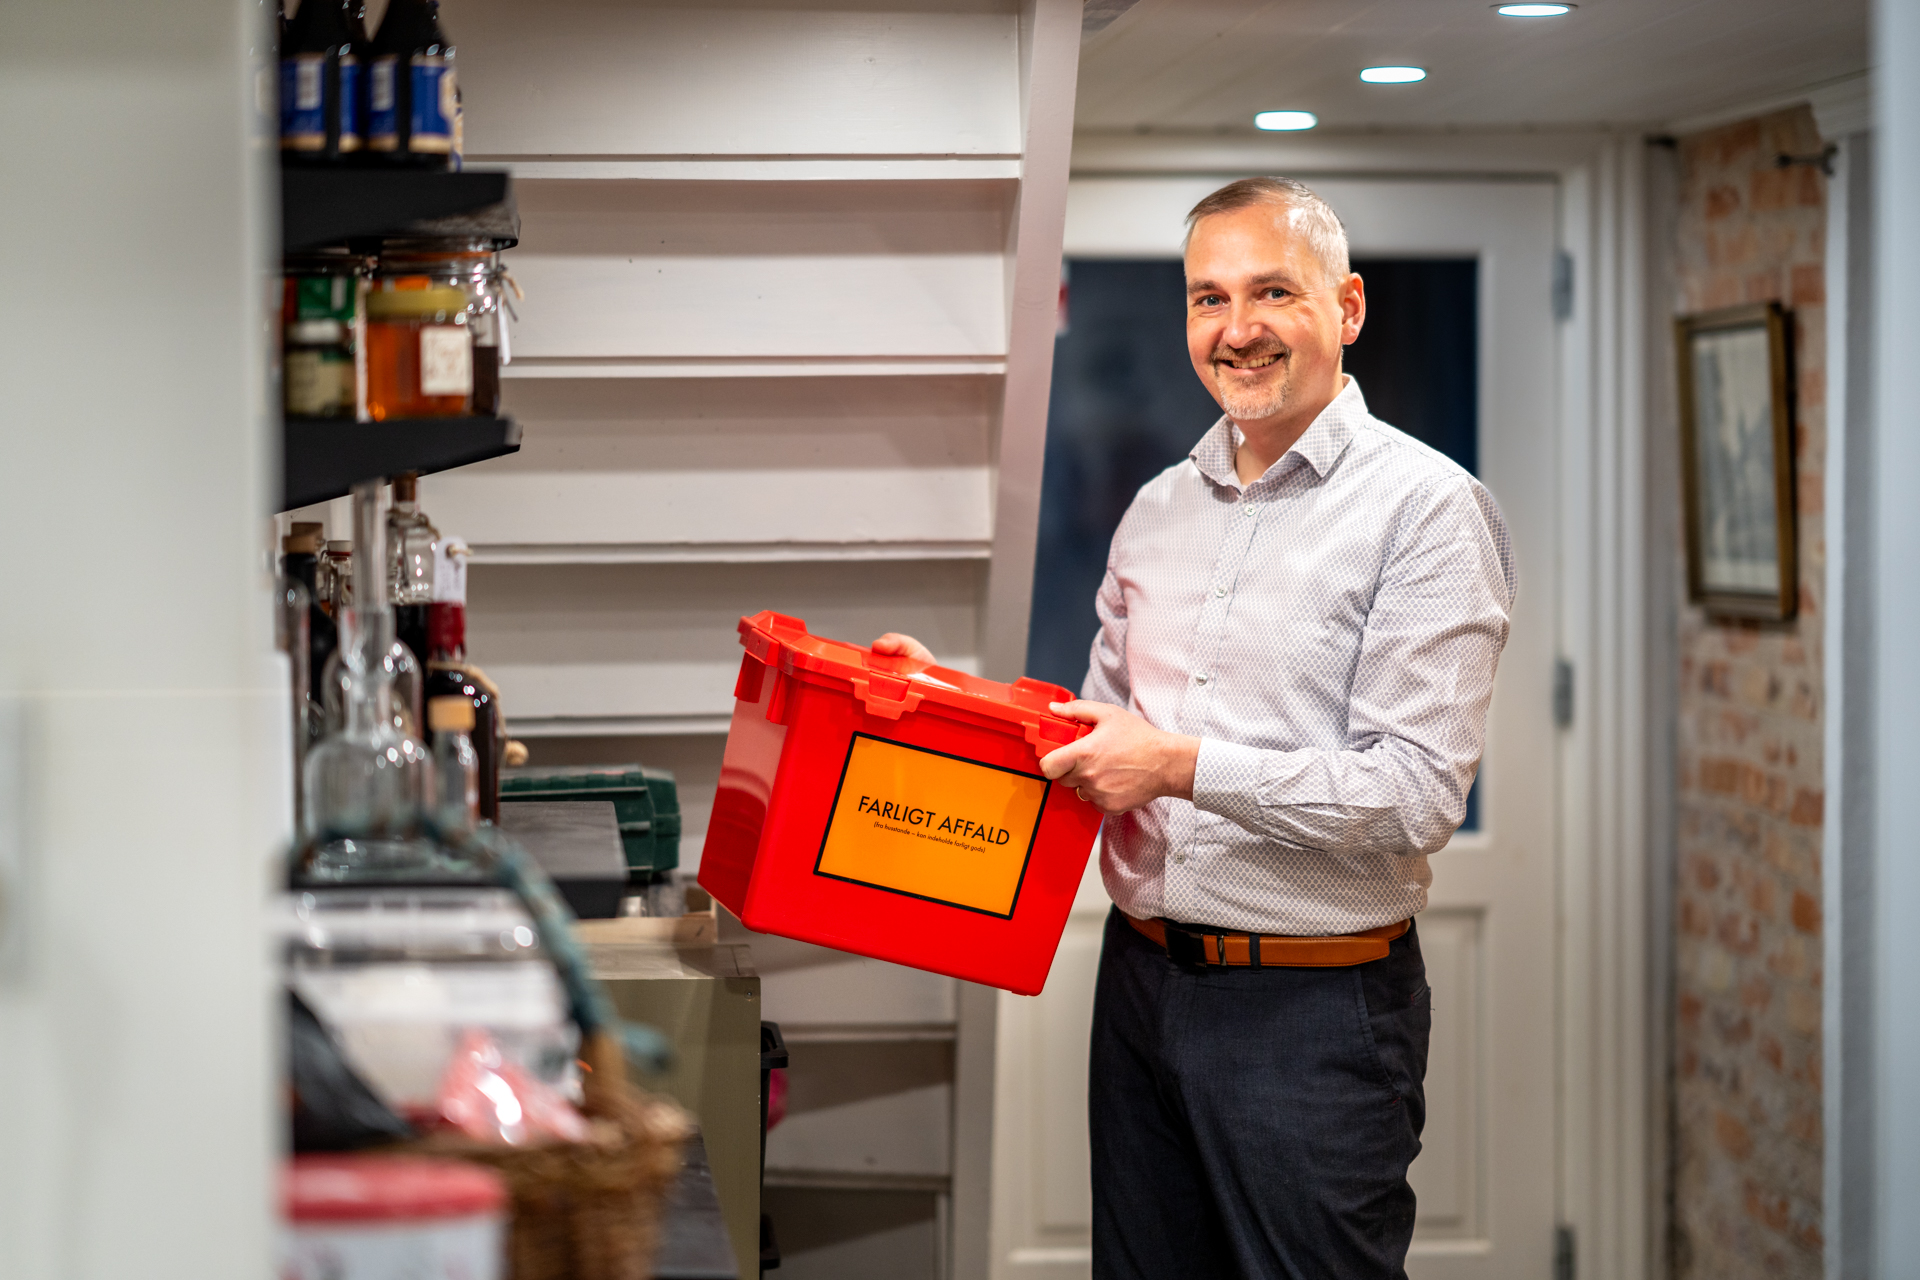 Henrik Müller, renosyds direktør i sin kælder. Han står med den røde kasse til farligt affald.